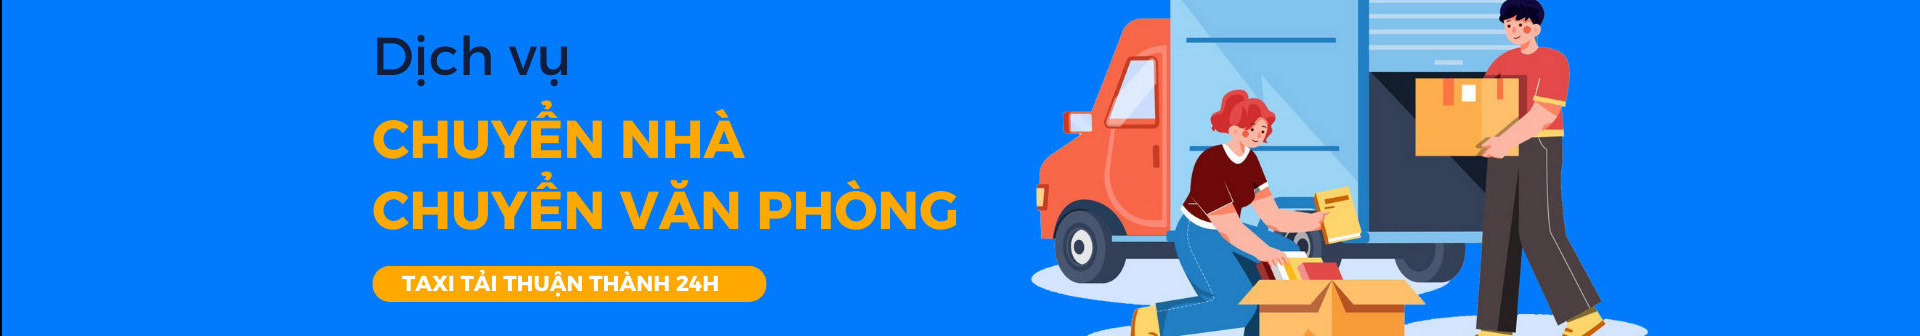 Banner de perfil de Taxi tải Thuận Thành 24h chính hãng tốt nhất